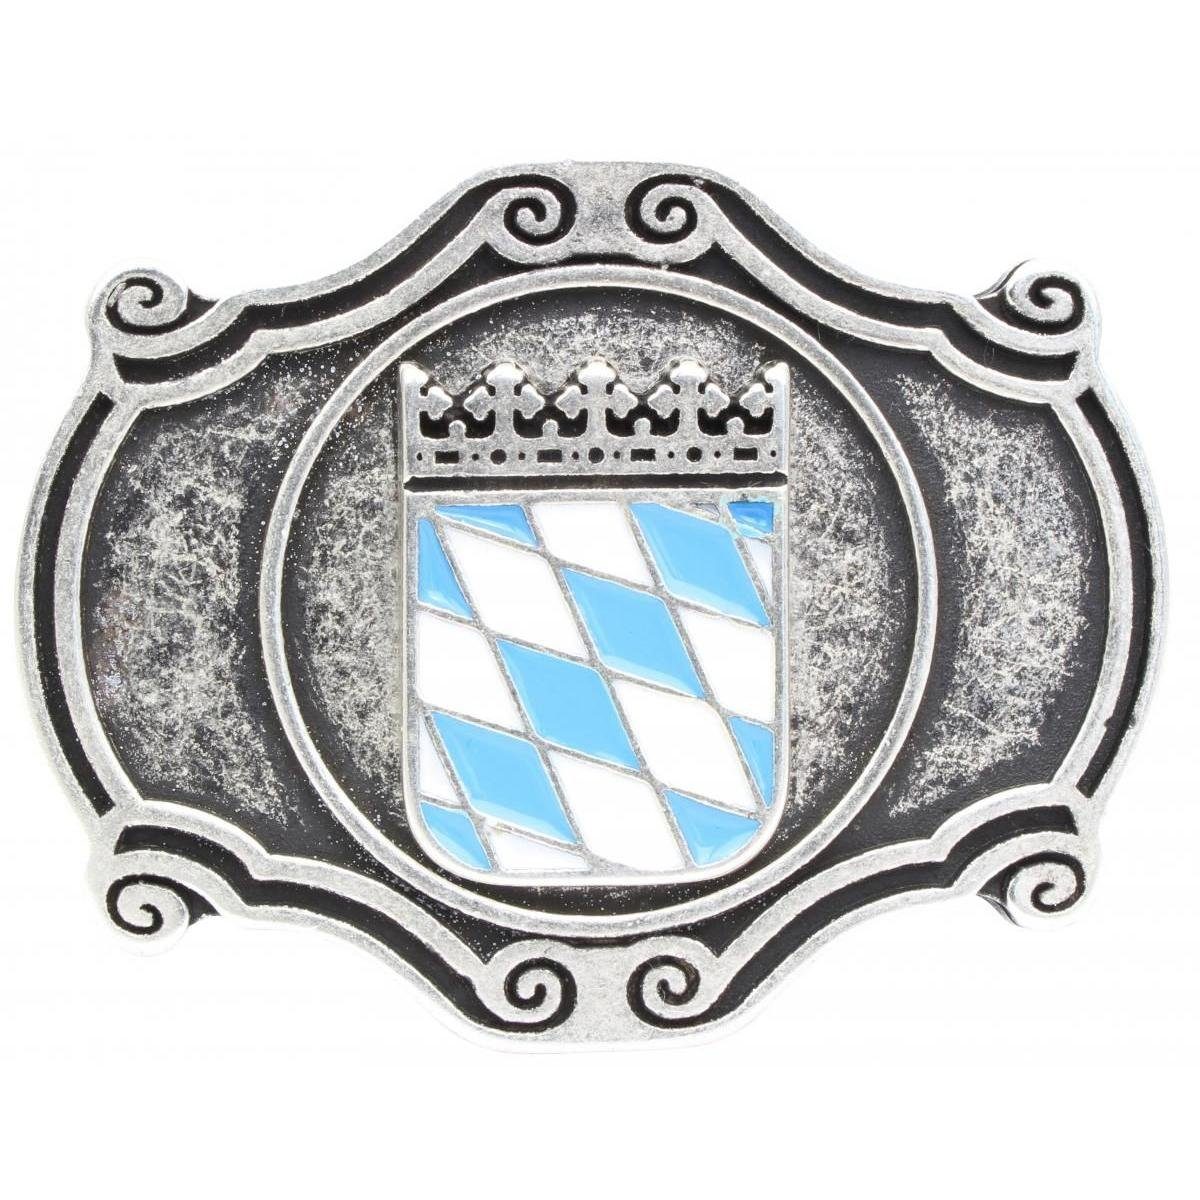 BELTINGER Gürtelschnalle Wappen Bayern 4,0 cm - Buckle Wechselschließe Gürtelschließe 40mm - Fü